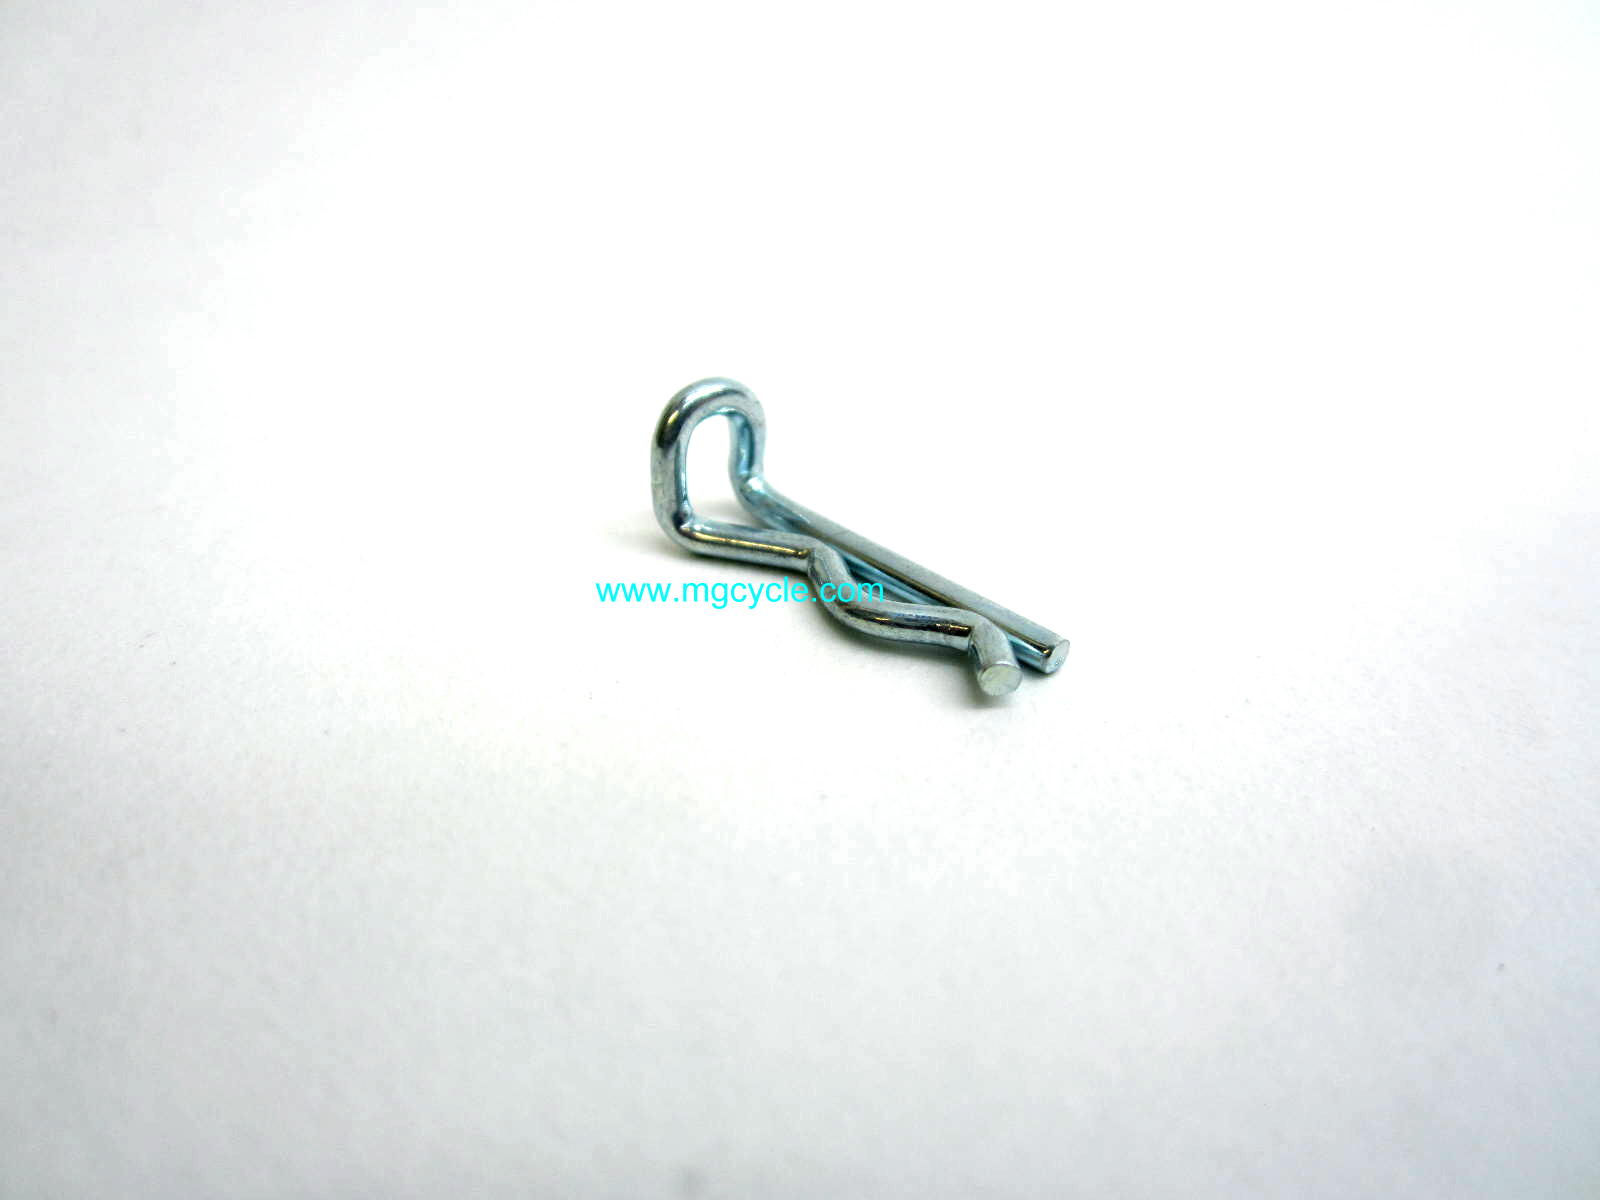 Brembo style caliper pin clip for brake pad retainer